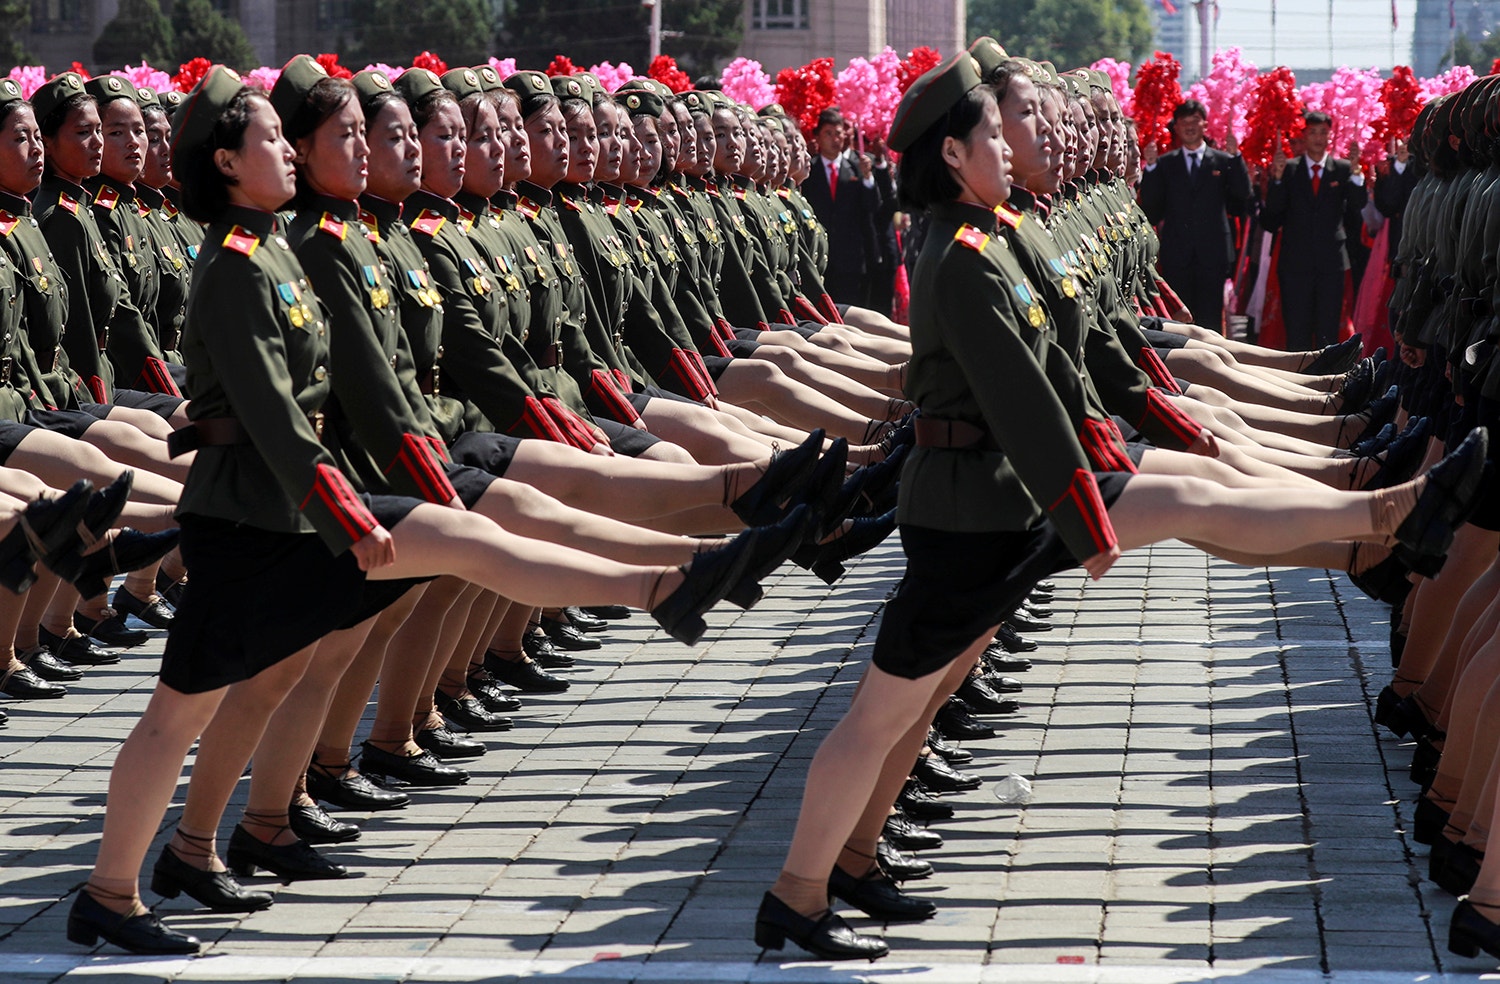  Parada militar em comemora&ccedil;&atilde;o dos 70 anos da funda&ccedil;&atilde;o da Coreia do Norte /Danish Siddiqui - Reuters 